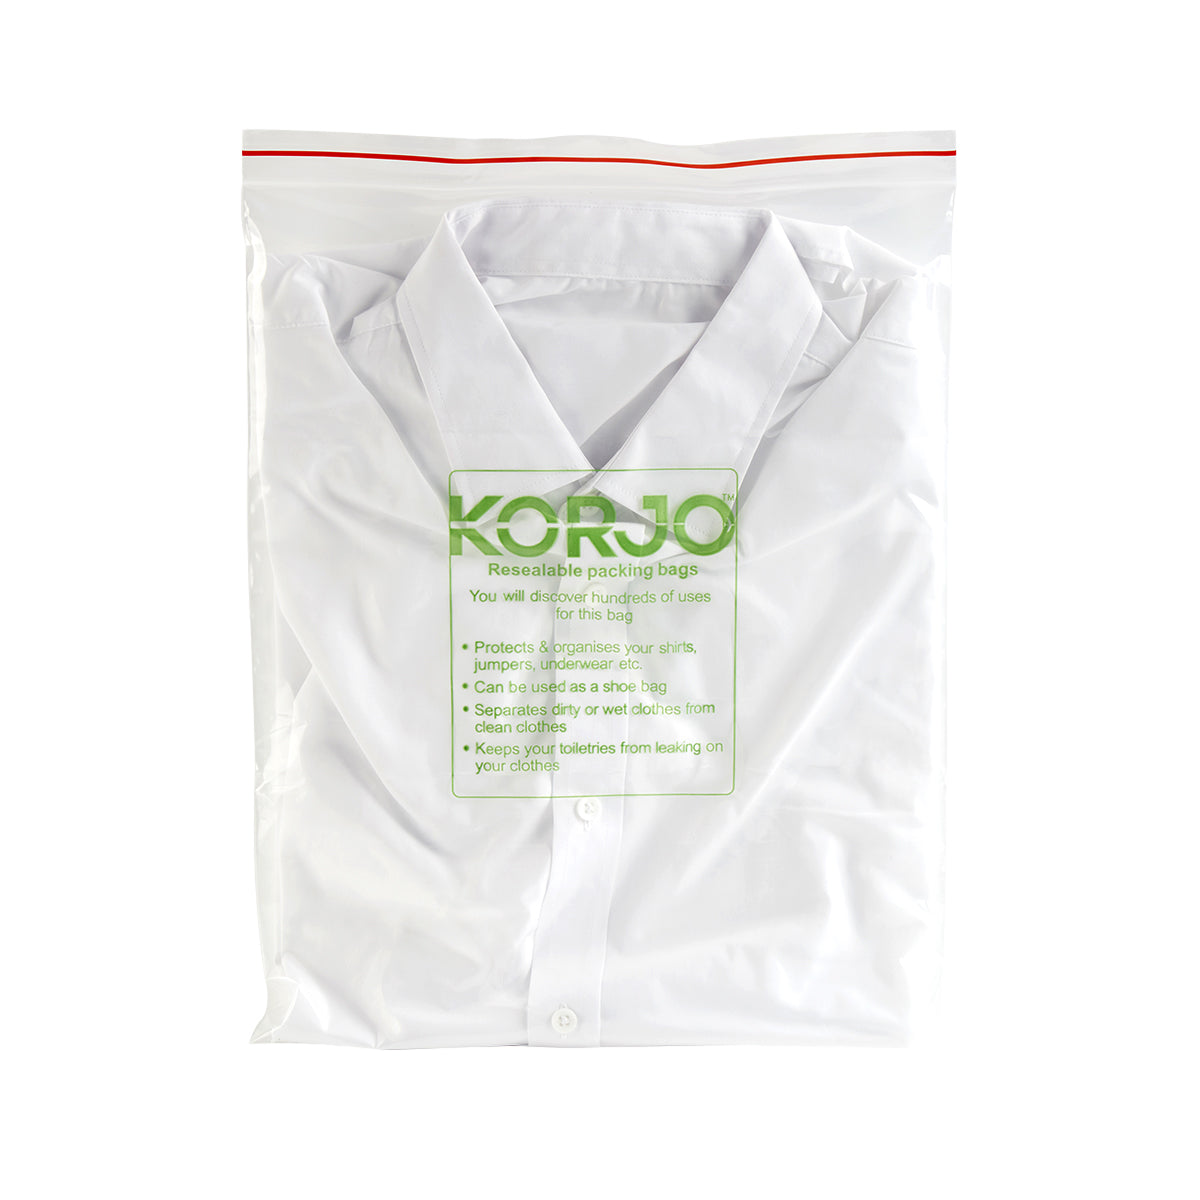 Korjo Packing Bags Resealable